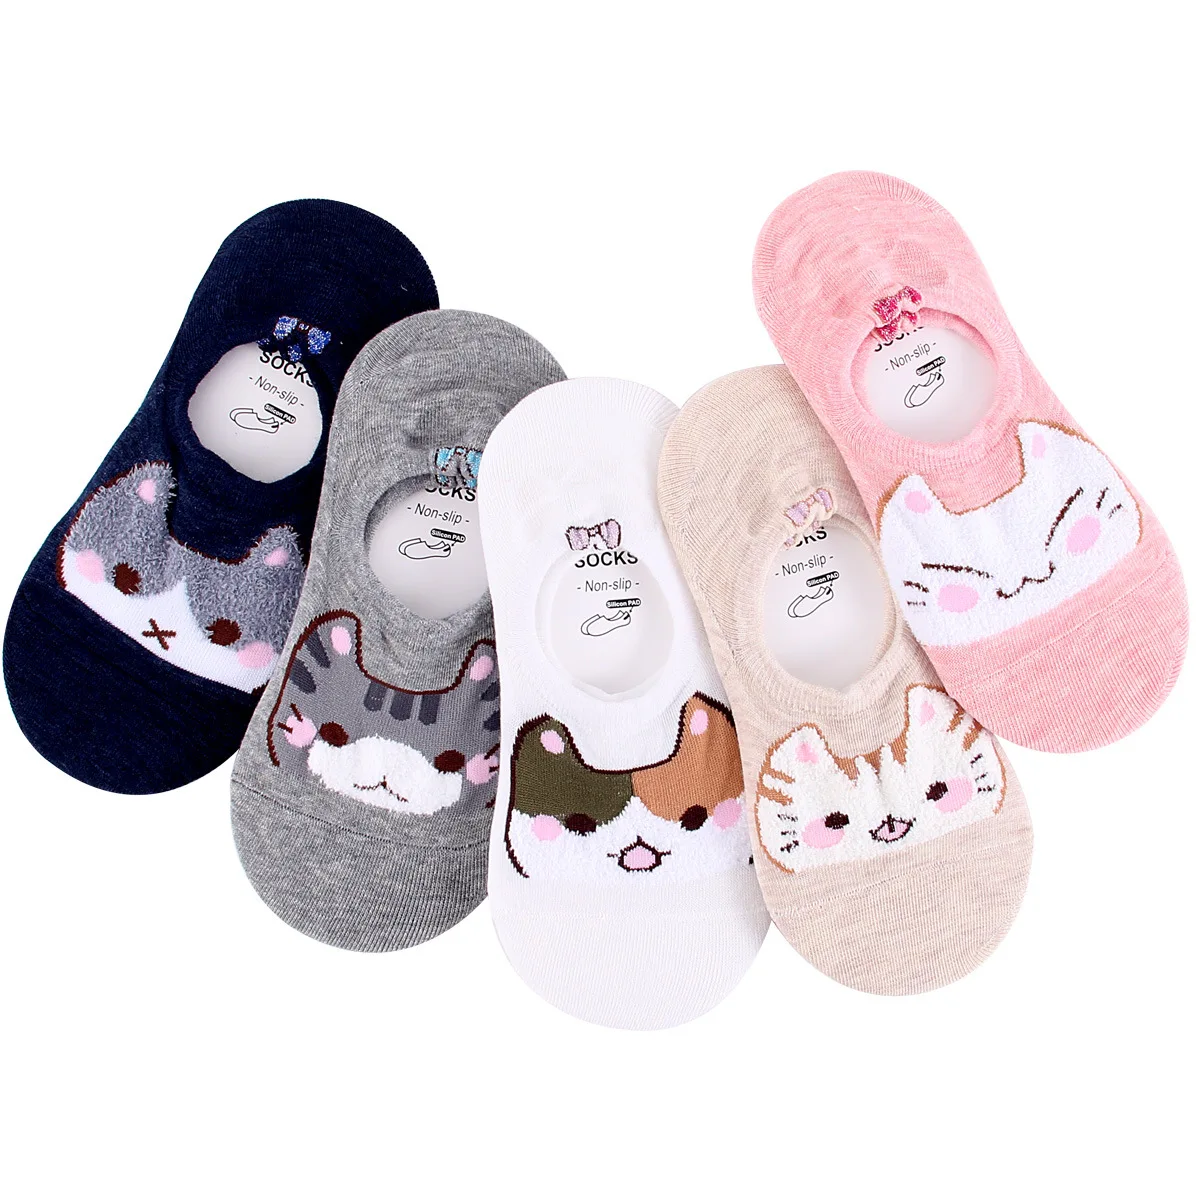 5 Pair/lot Women Cute Animal Socks  Cat Socks Novelty Funny Crew Sock Gifts for Women